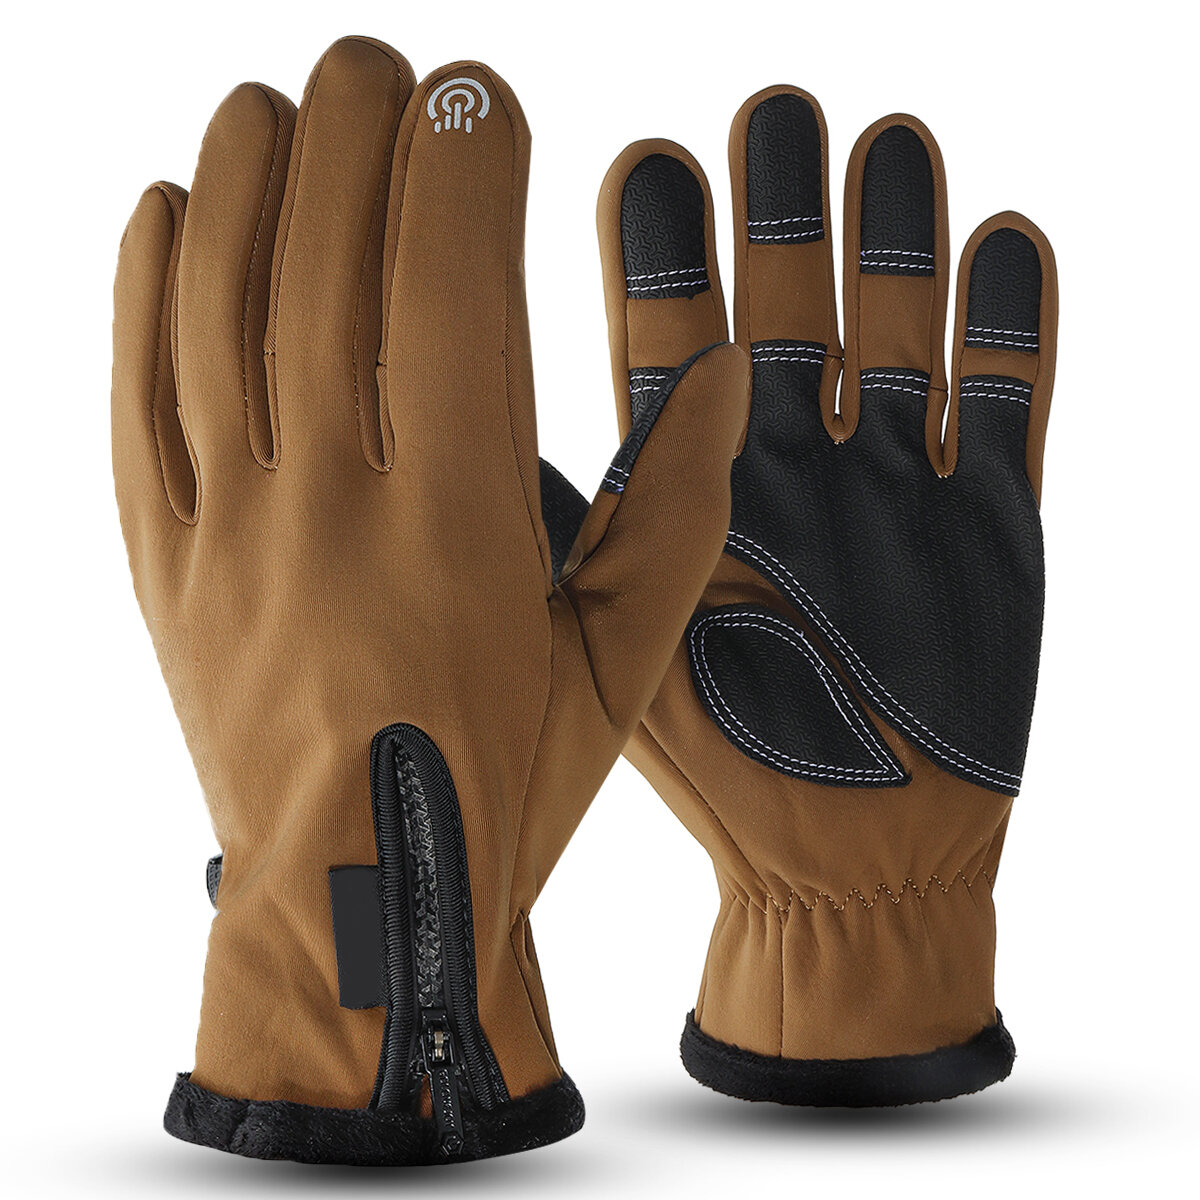 Winter Warm Touchscreen Handschoen antislip Winddicht Waterdichte Handschoenen Voor Outdoor Ski?n Kl